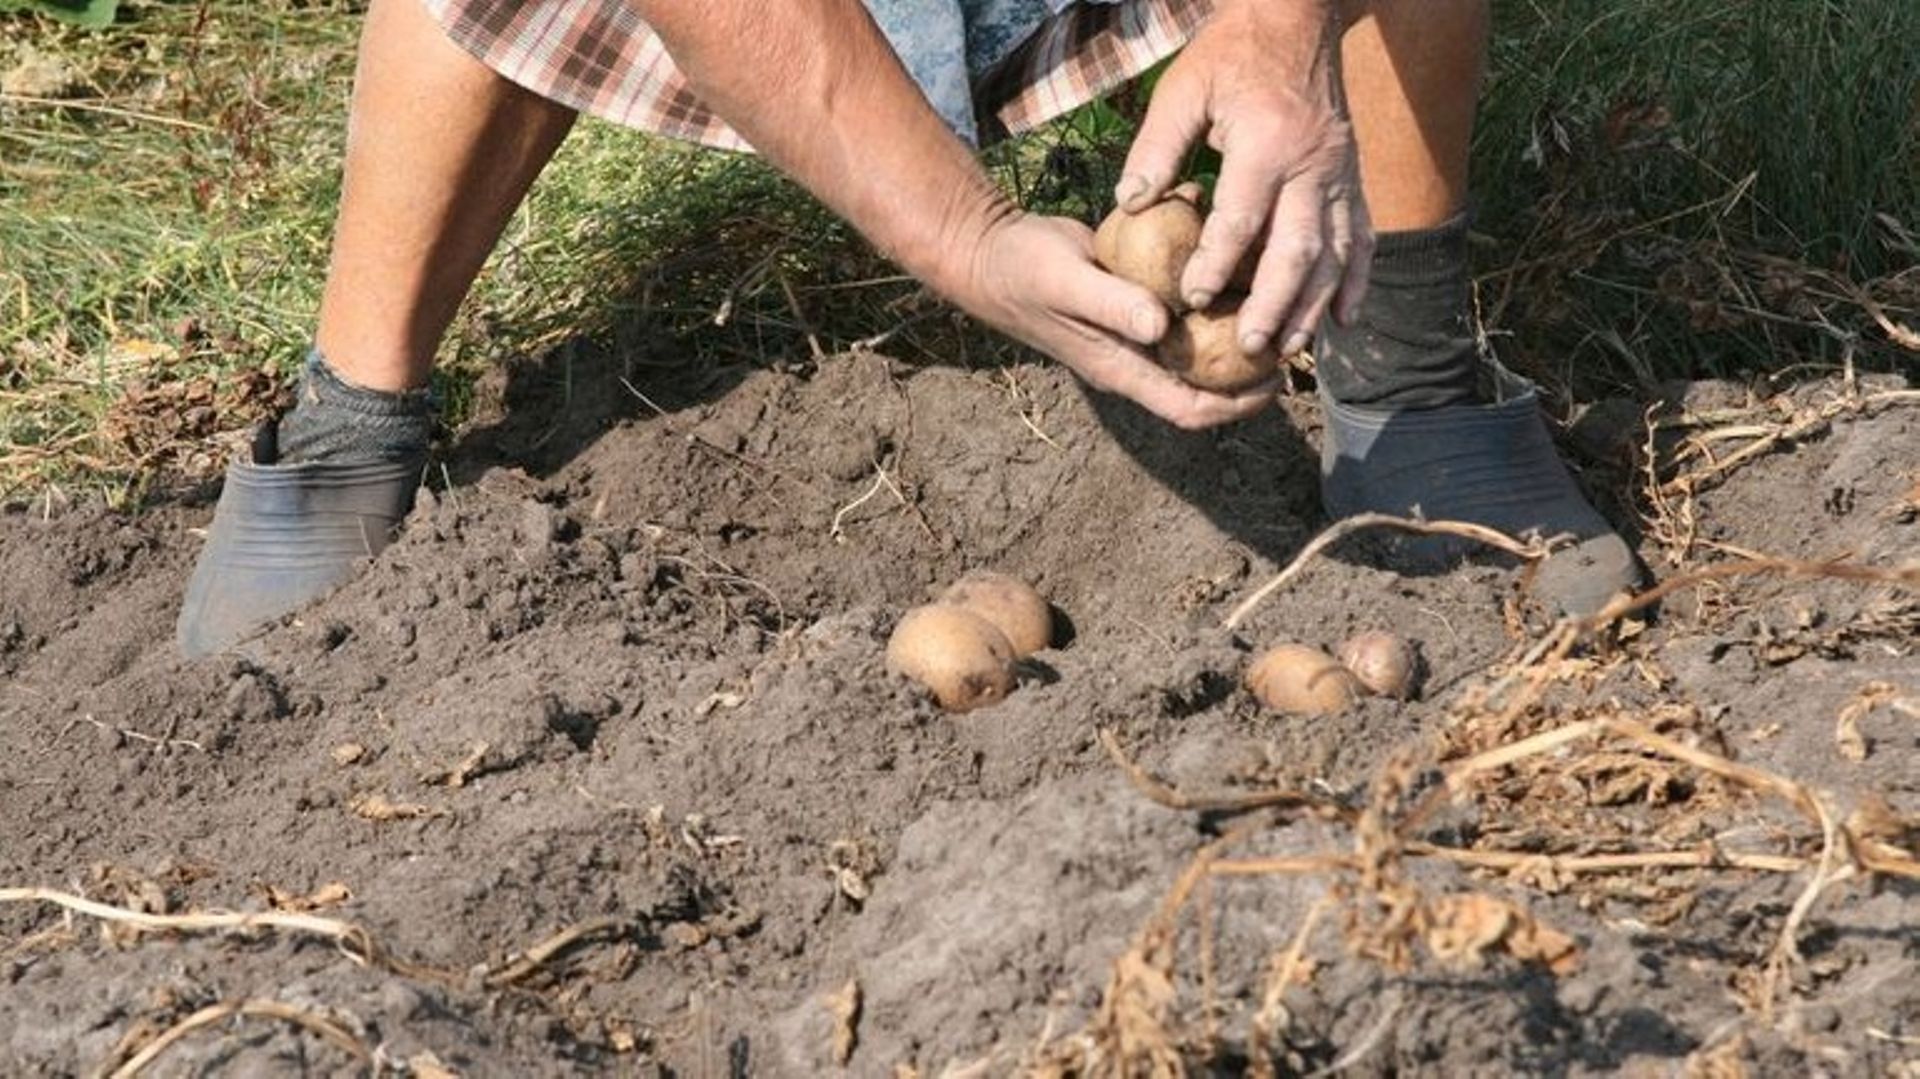 Le glanage consiste en le ramassage des aliments restés au sol après la moisson.